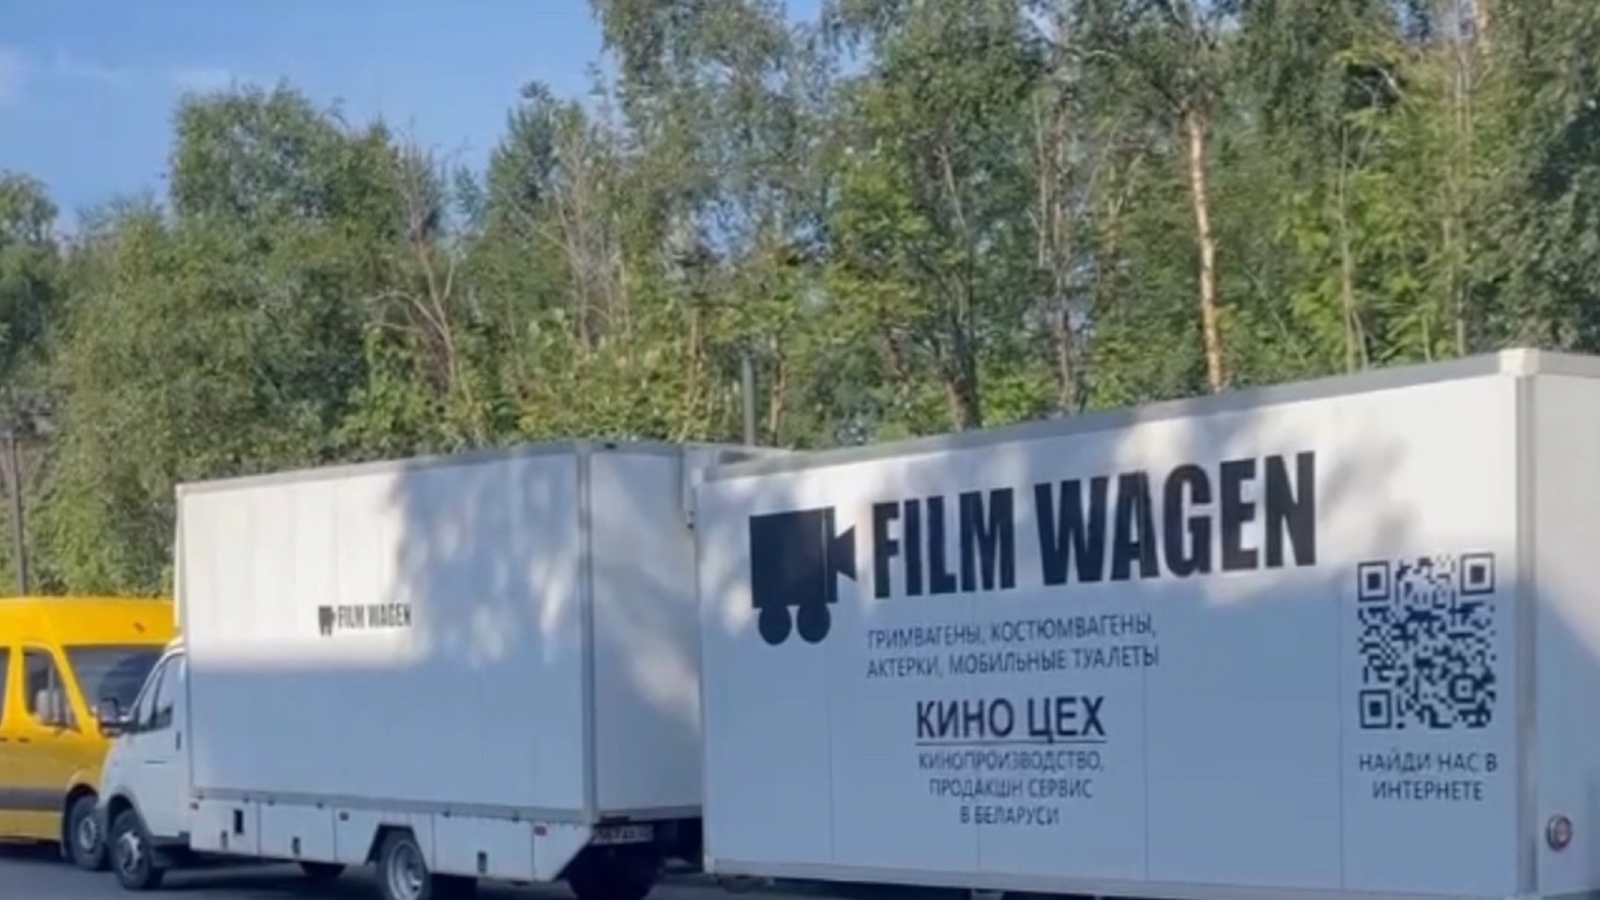 Киносъёмочные фургоны замечены в центре Мурманска 